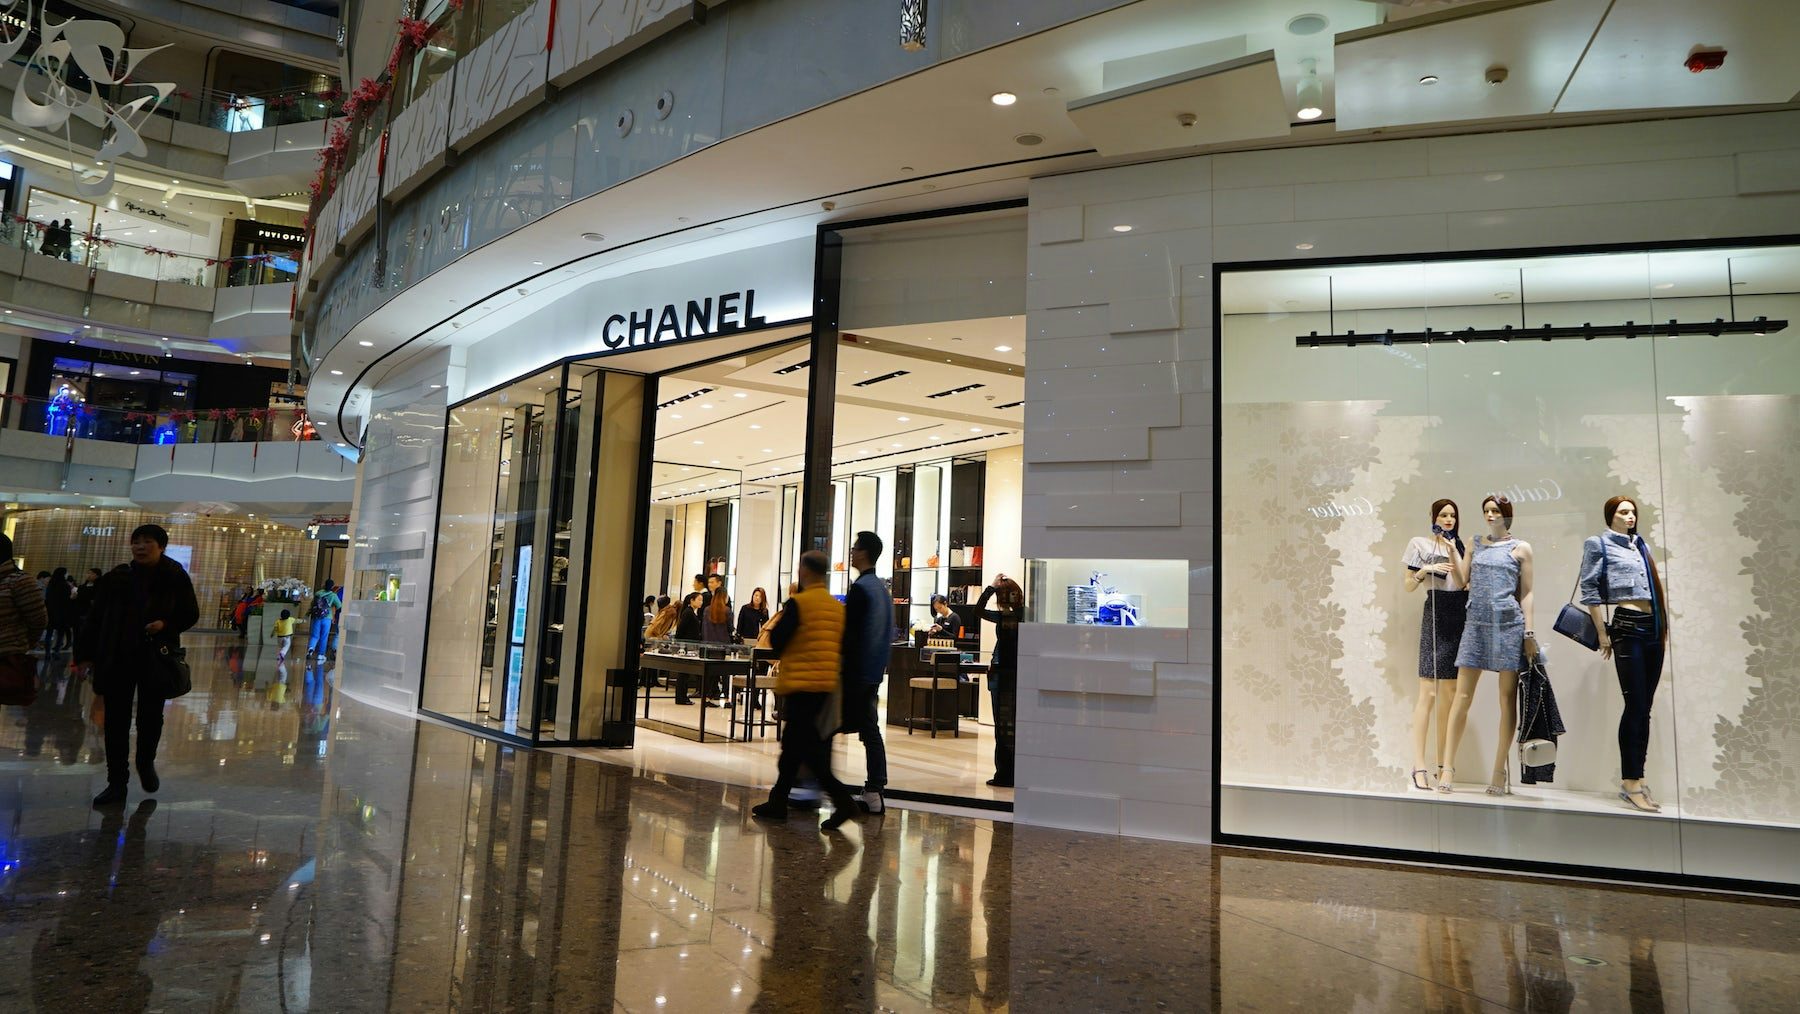 Chanel store, Shanghai. Shutterstock.